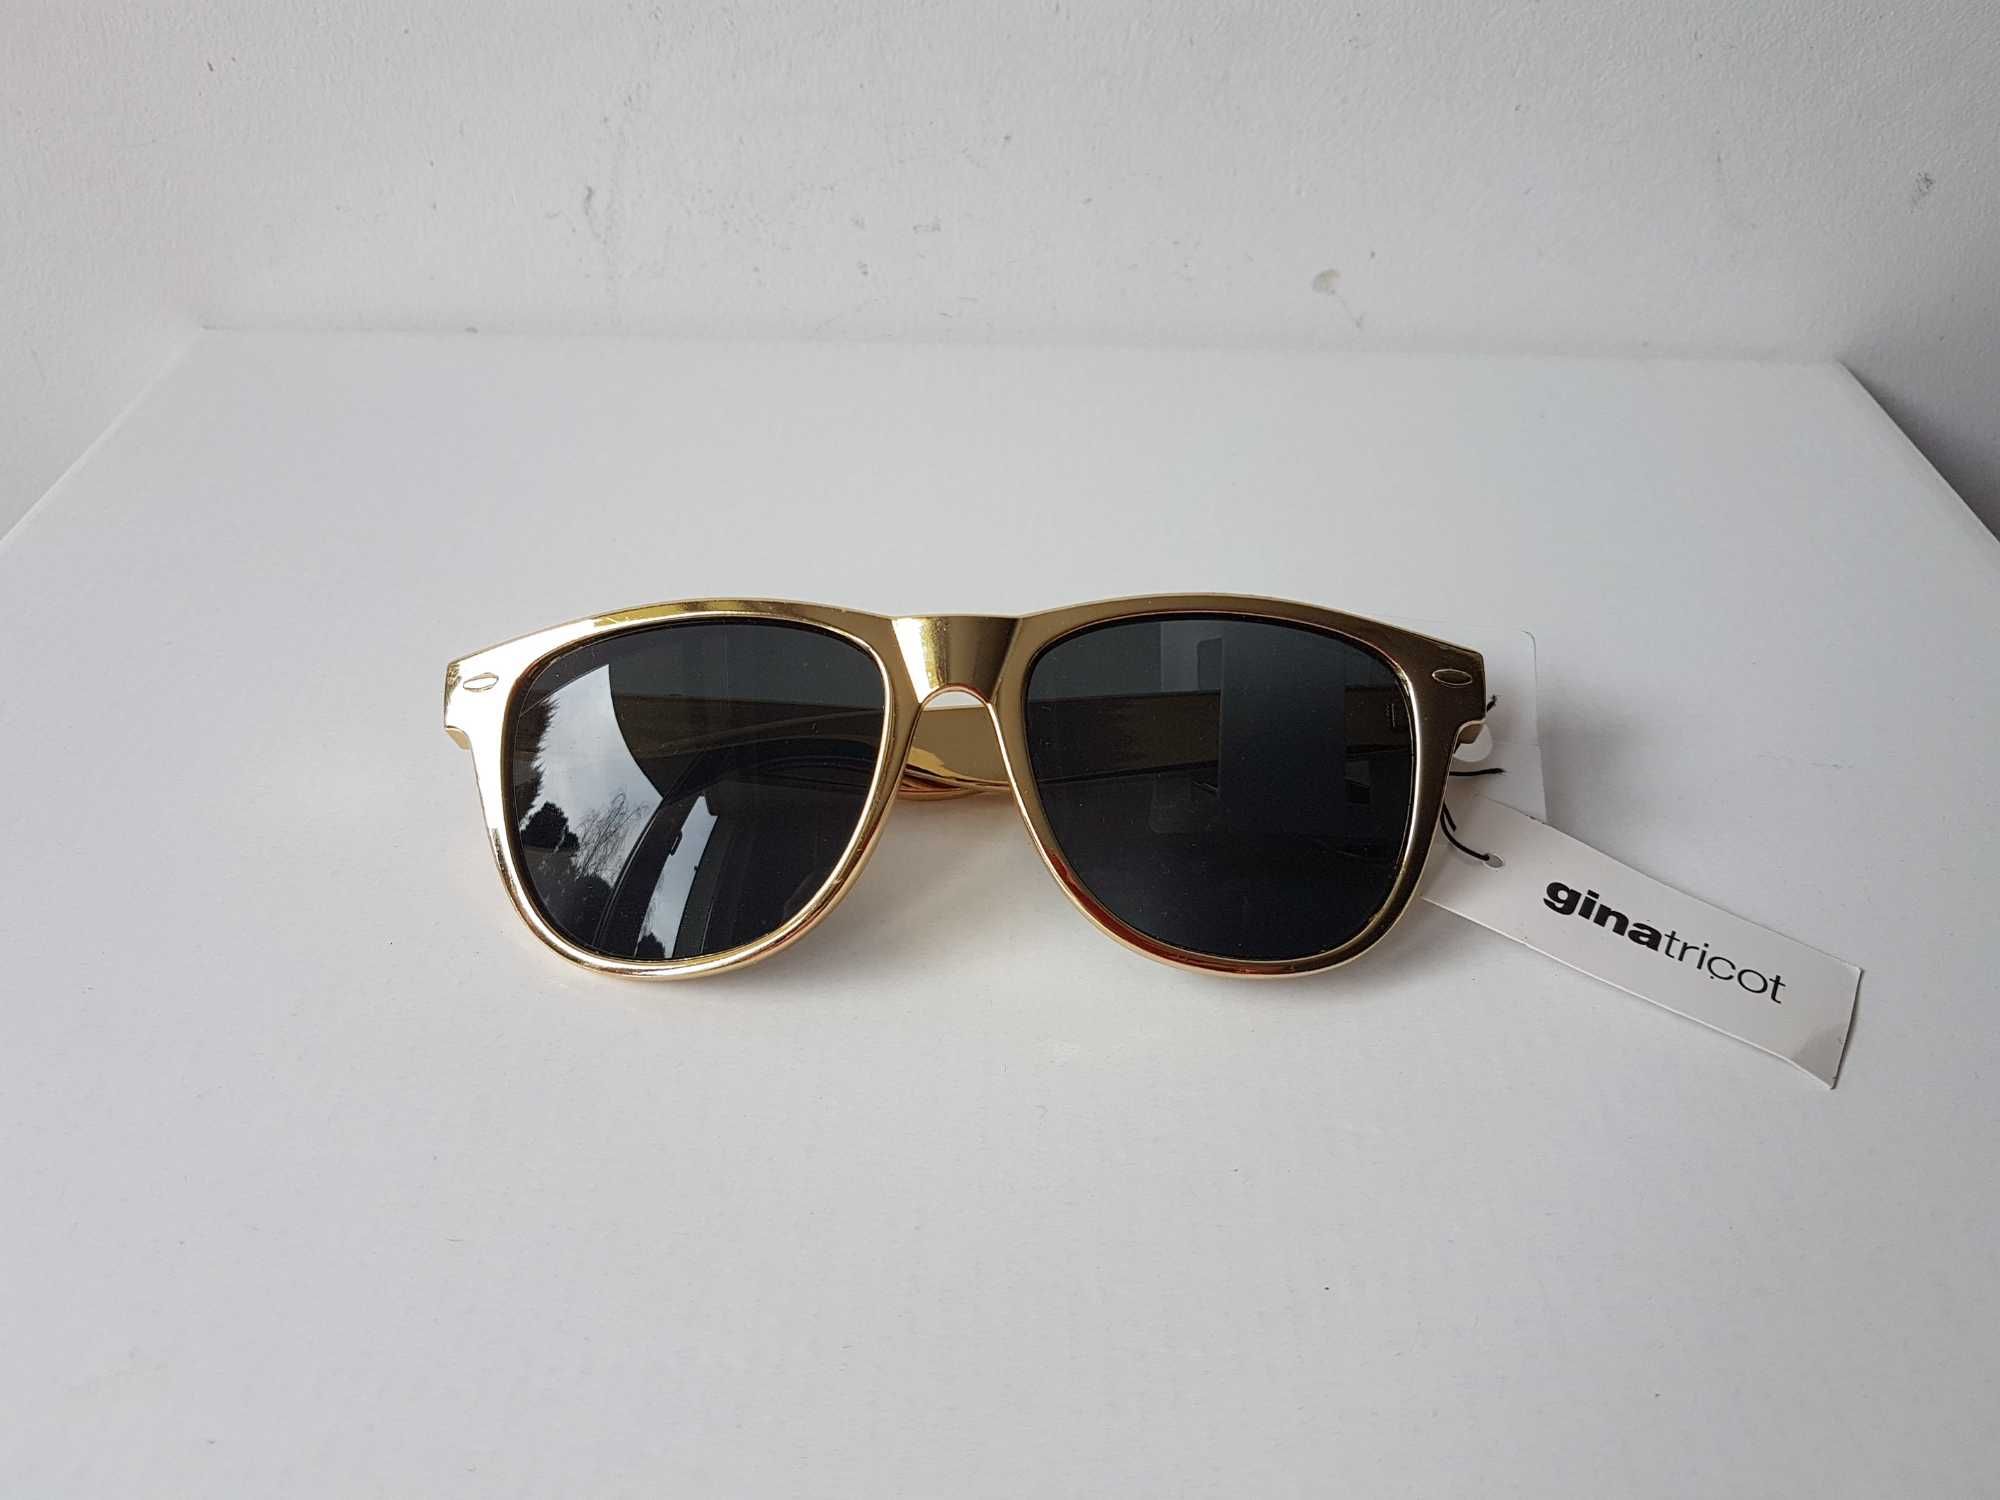 Nowe okulary przeciwsłoneczne złote NERDY Gina Tricot UV400